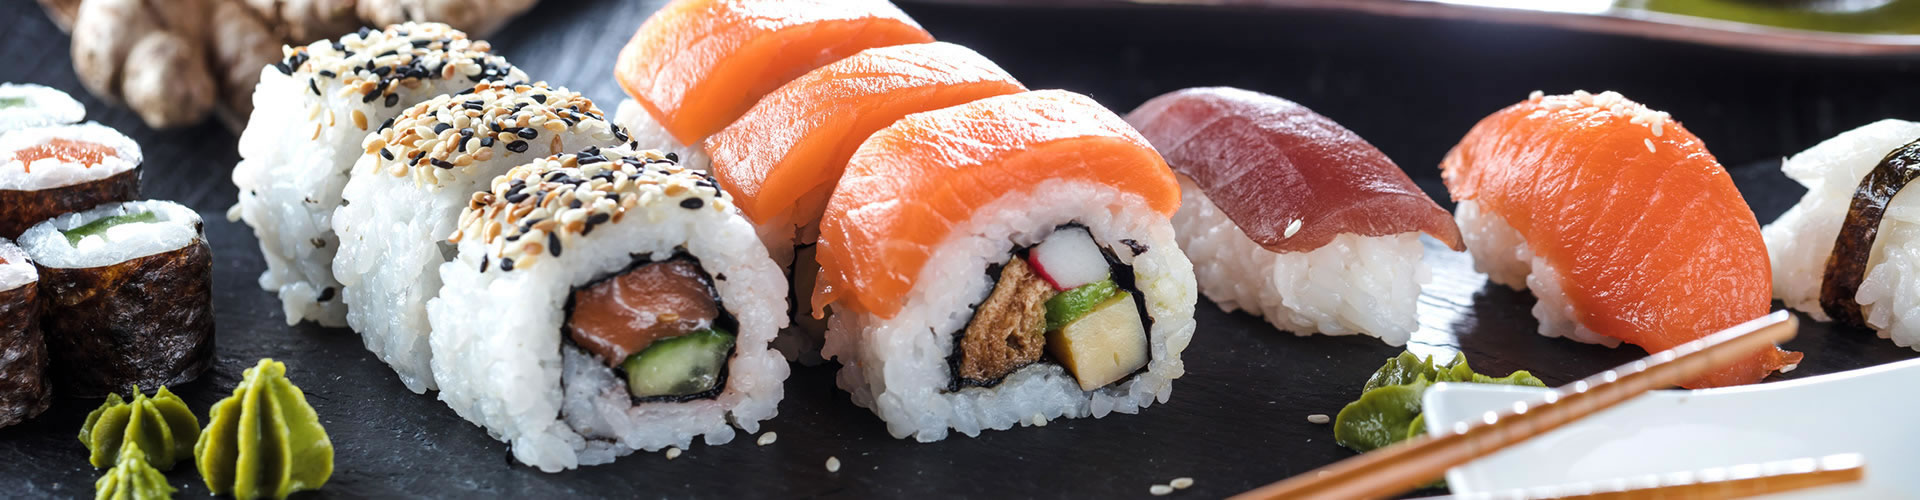 różne rodzaje sushi